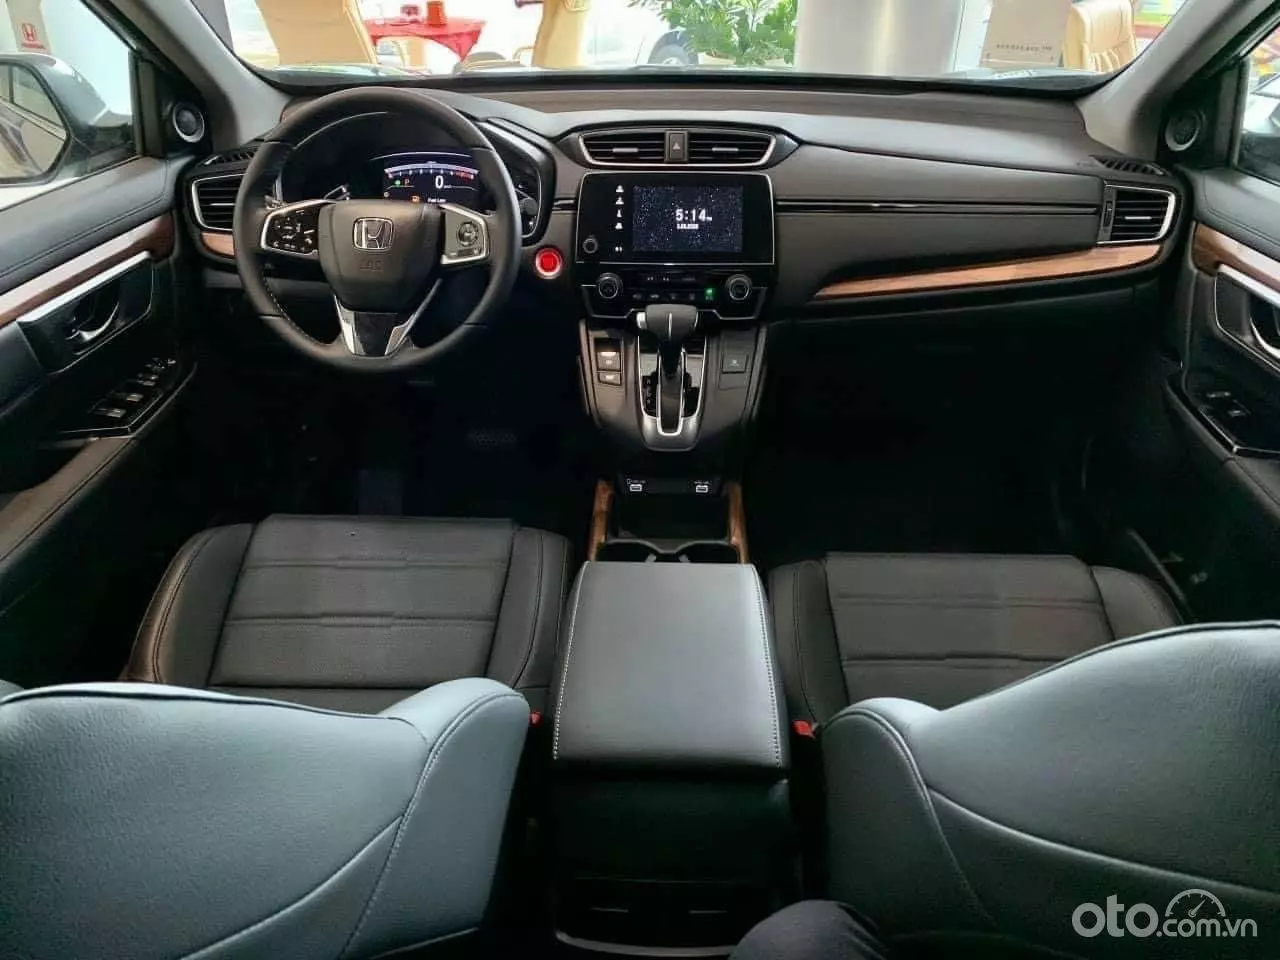 Khoang lái Honda CR-V rộng rãi, hiện đại và đậm chất thẩm mỹ.